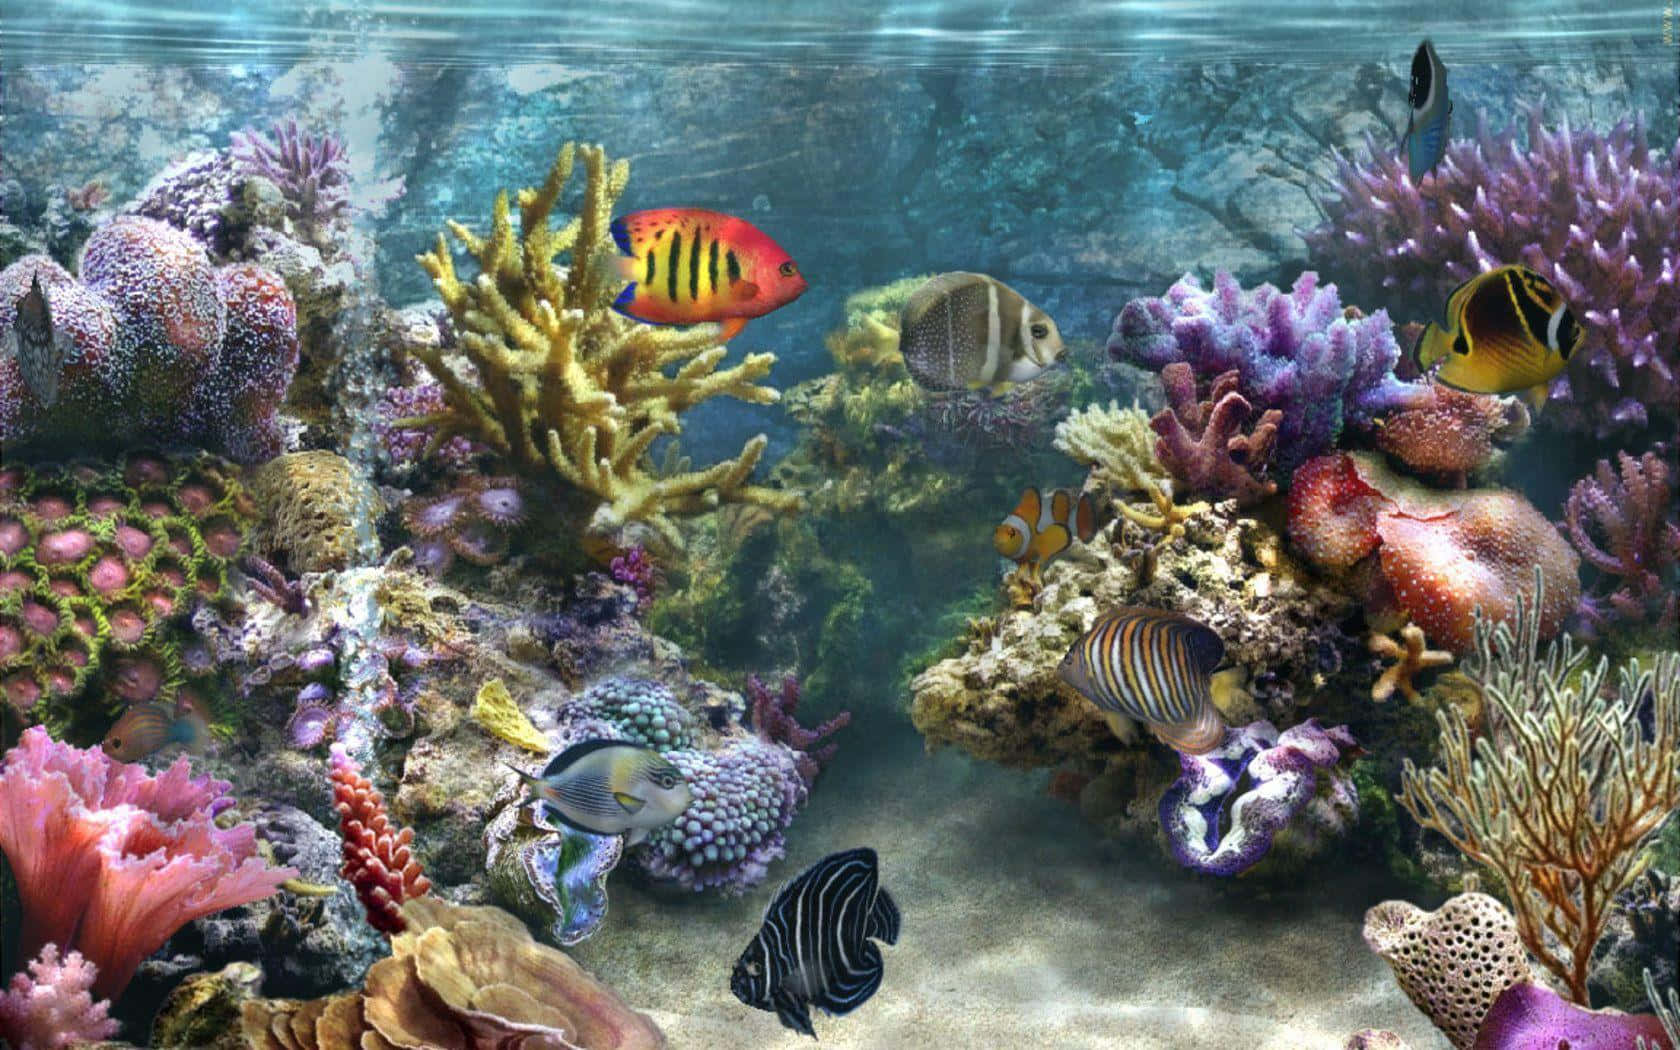 Lebendigeskorallenriff Gefunden In Den Seichten Gewässern Eines Tropischen Strandes.